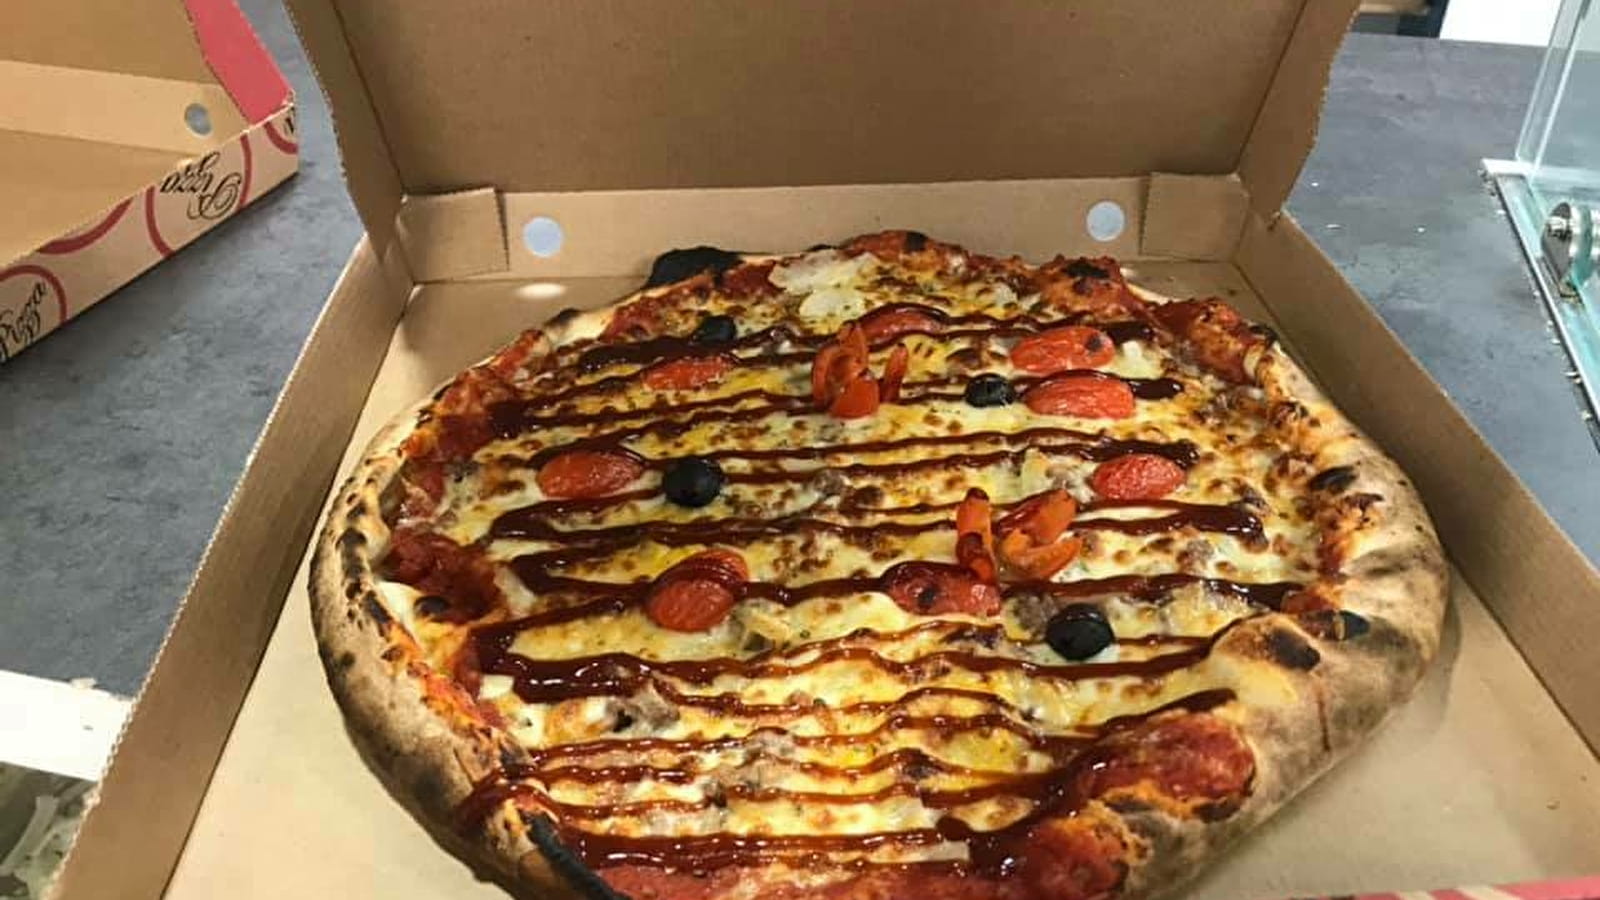 Pizzeria Yanno's Pizza 2